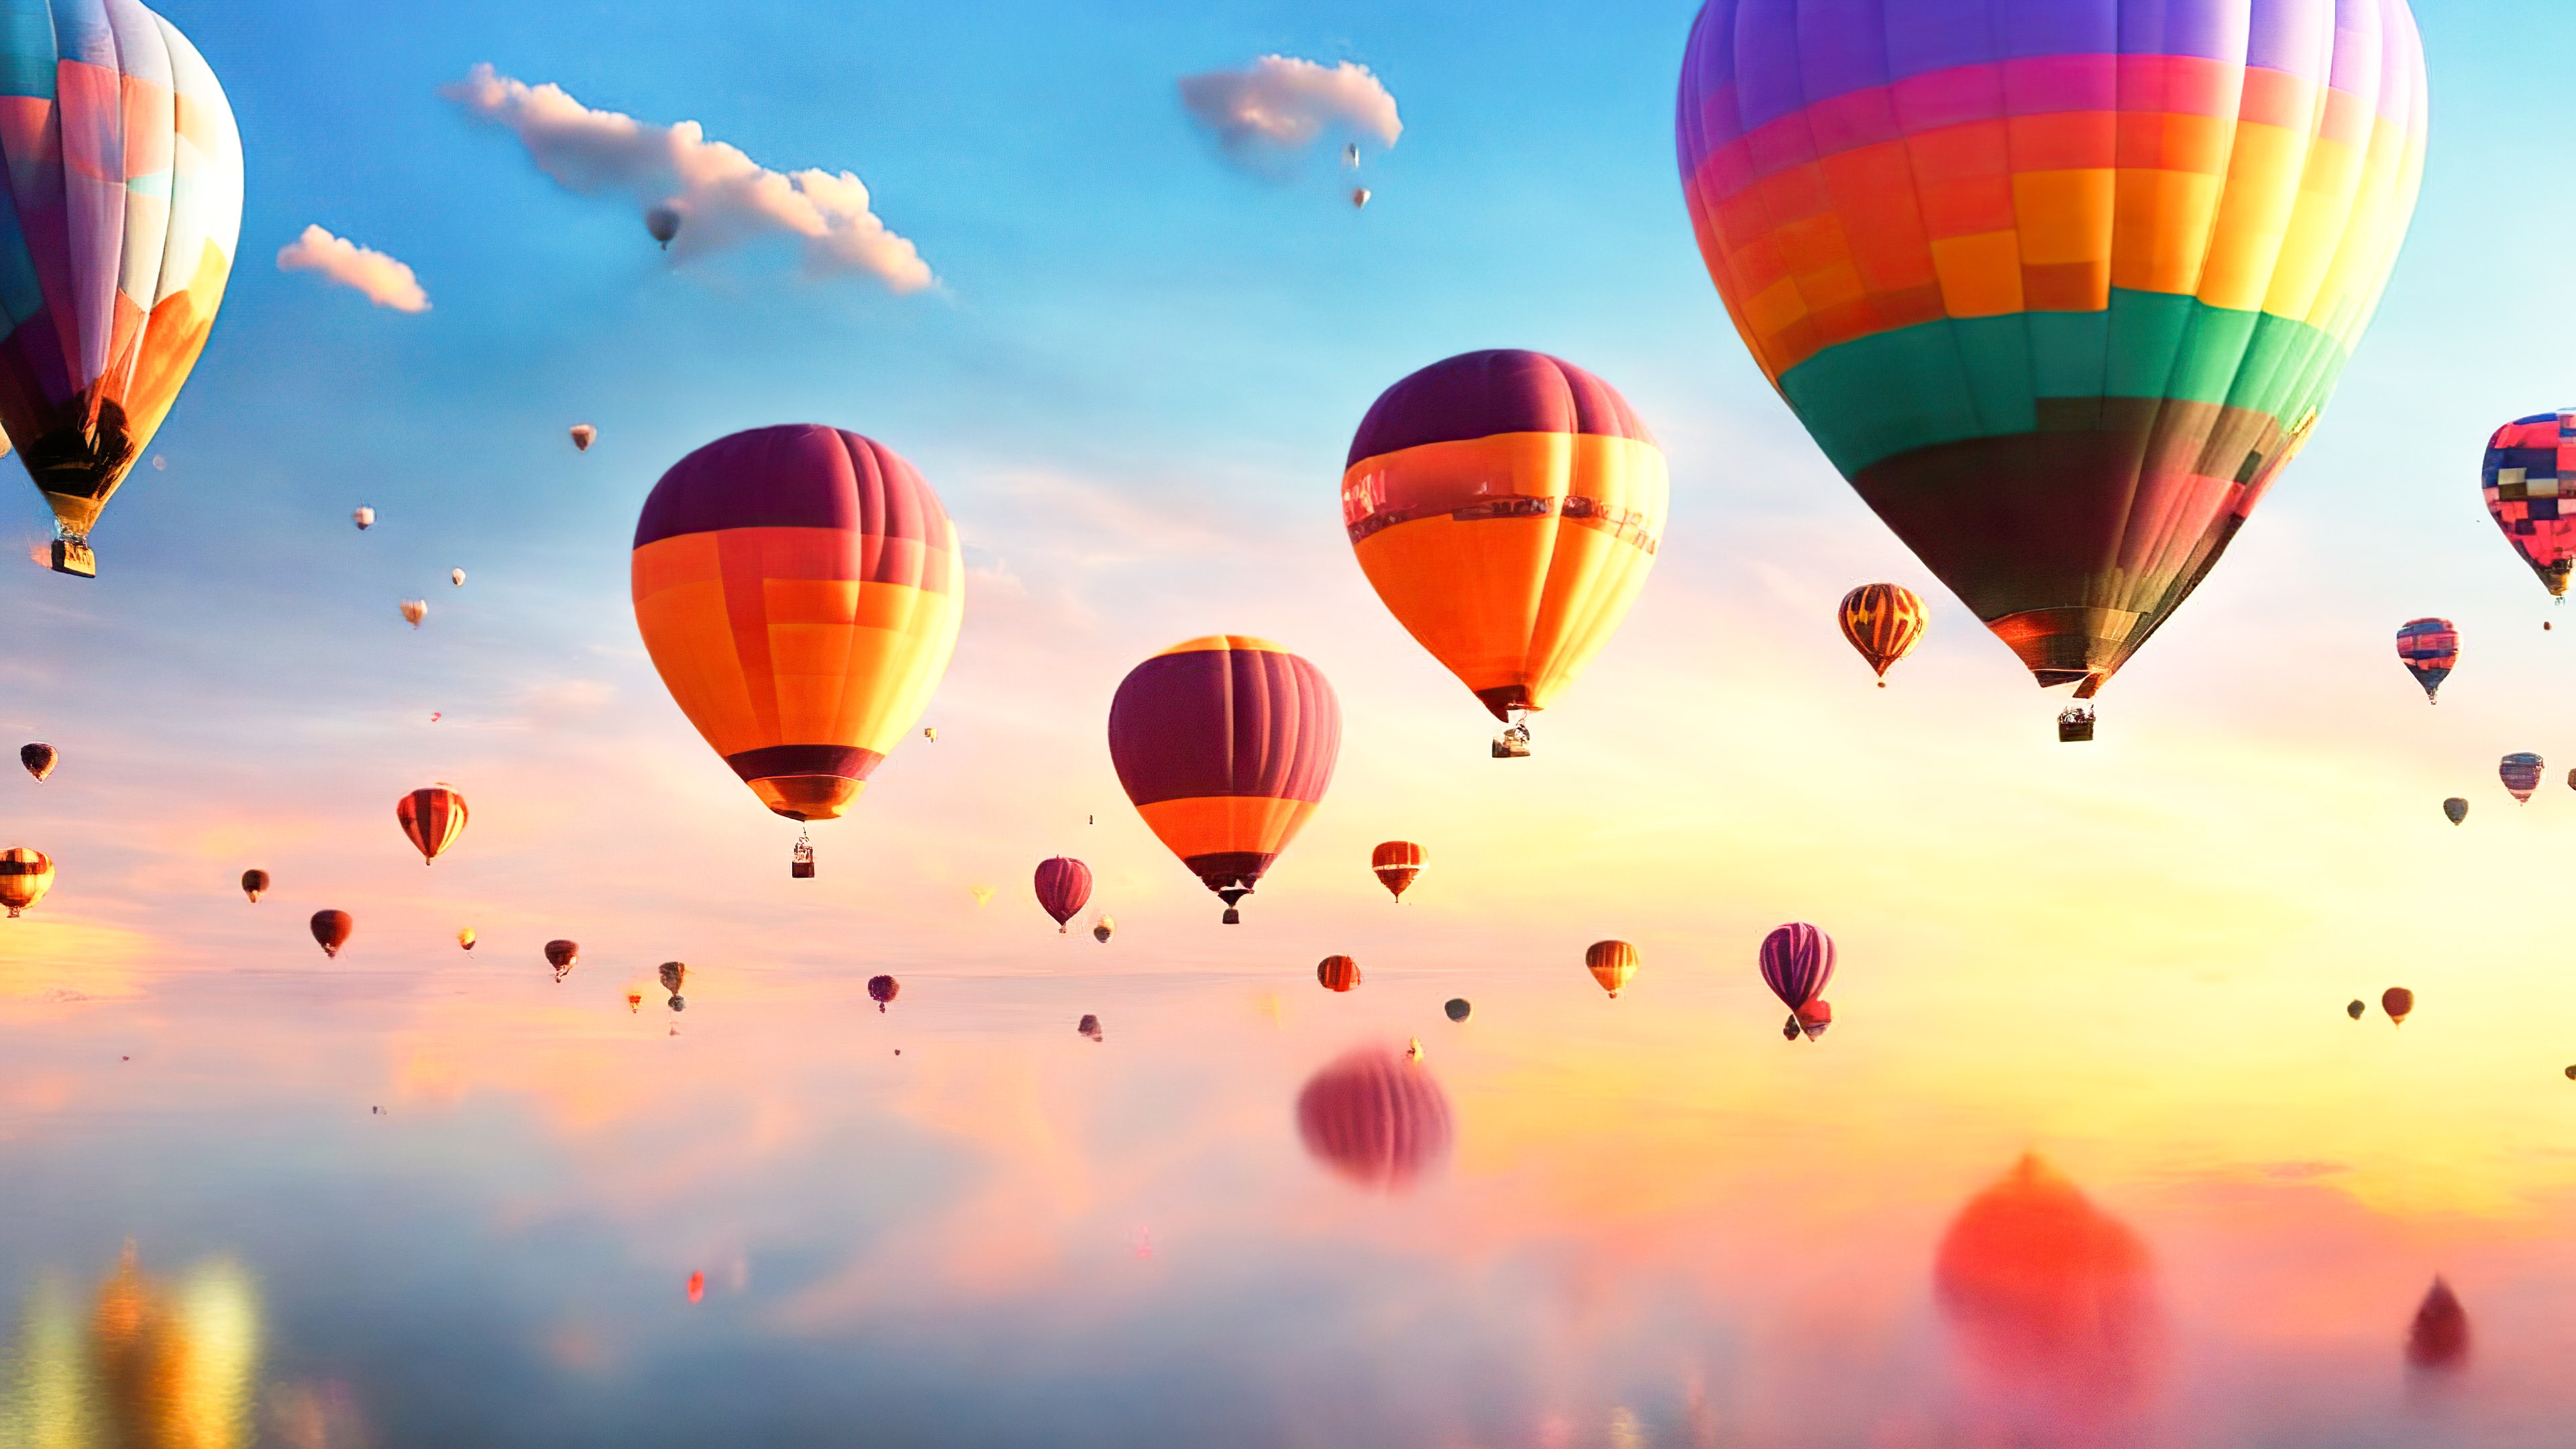 Ornez votre écran avec un ciel fantasque et rêveur rempli de montgolfières flottantes et colorées au lever du soleil avec notre fond d'écran en ultra HD des paysages.